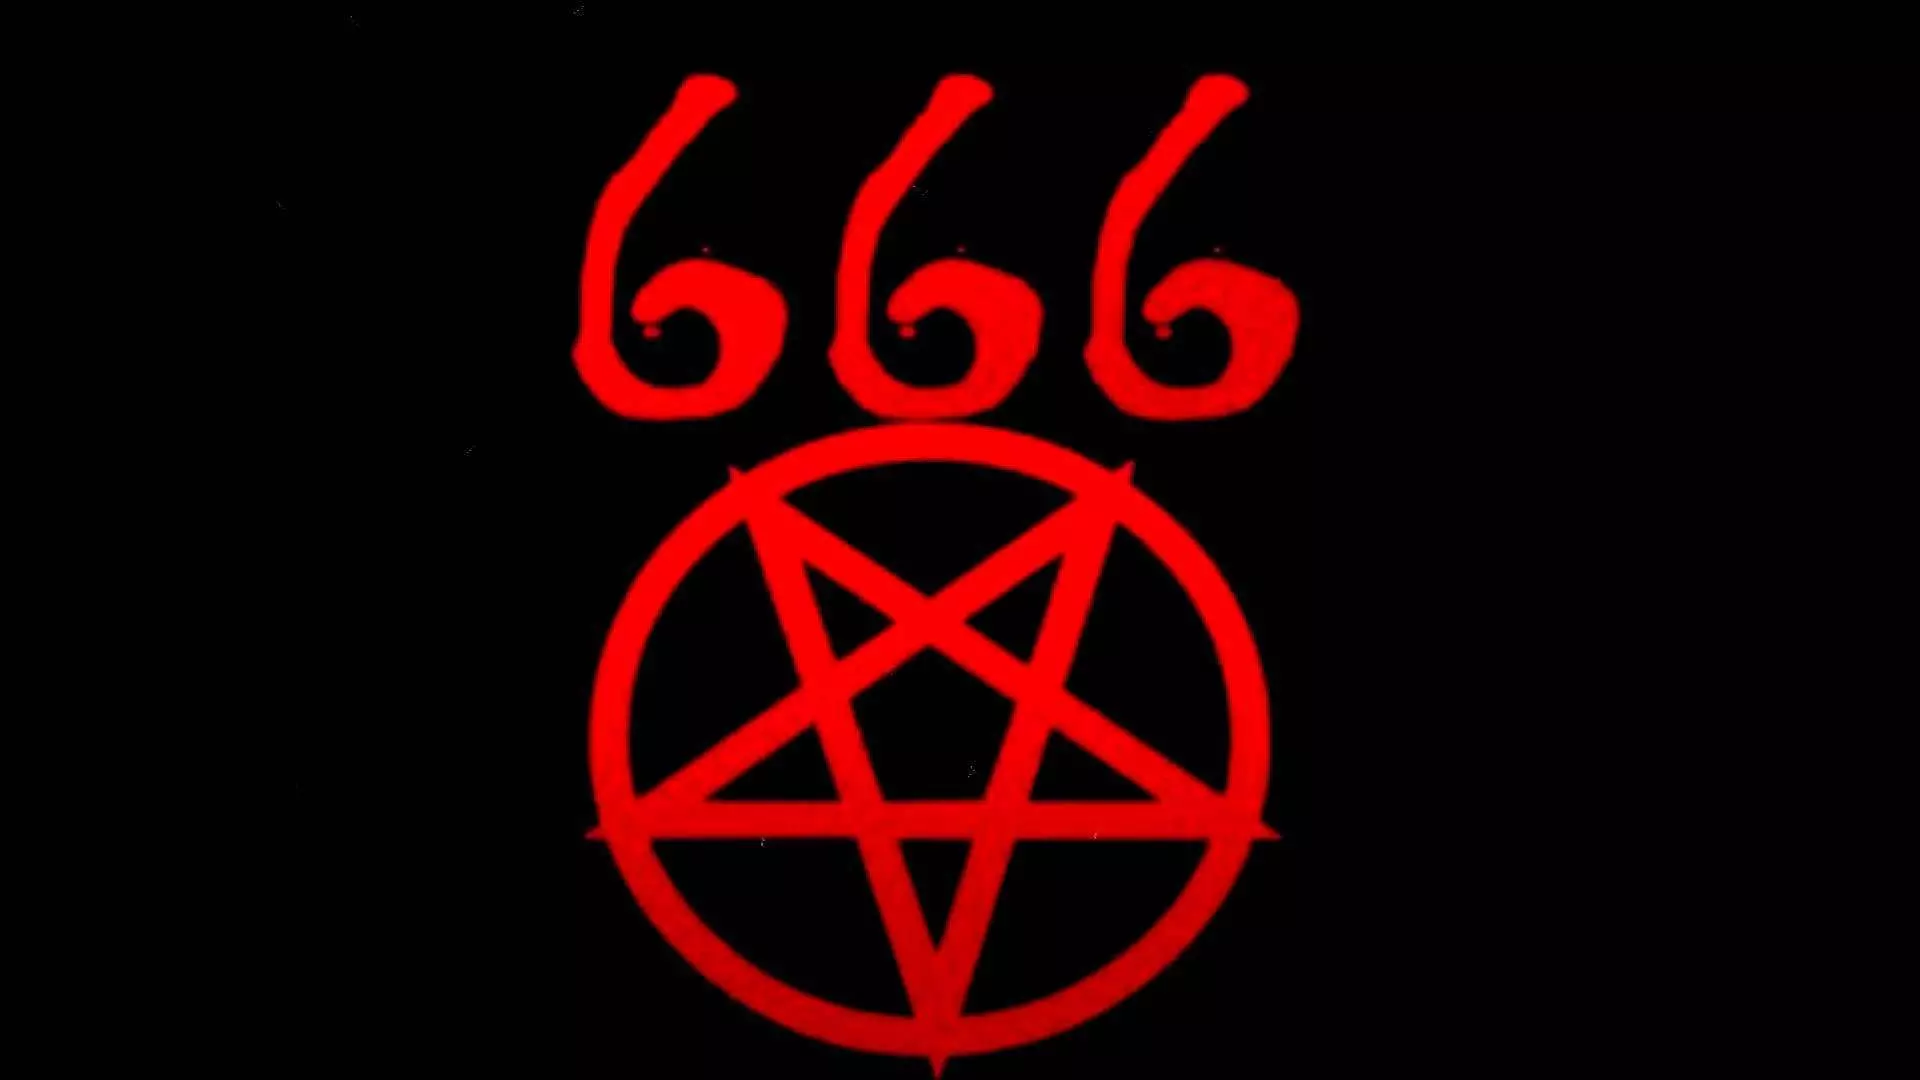 666 micnaheedu waa